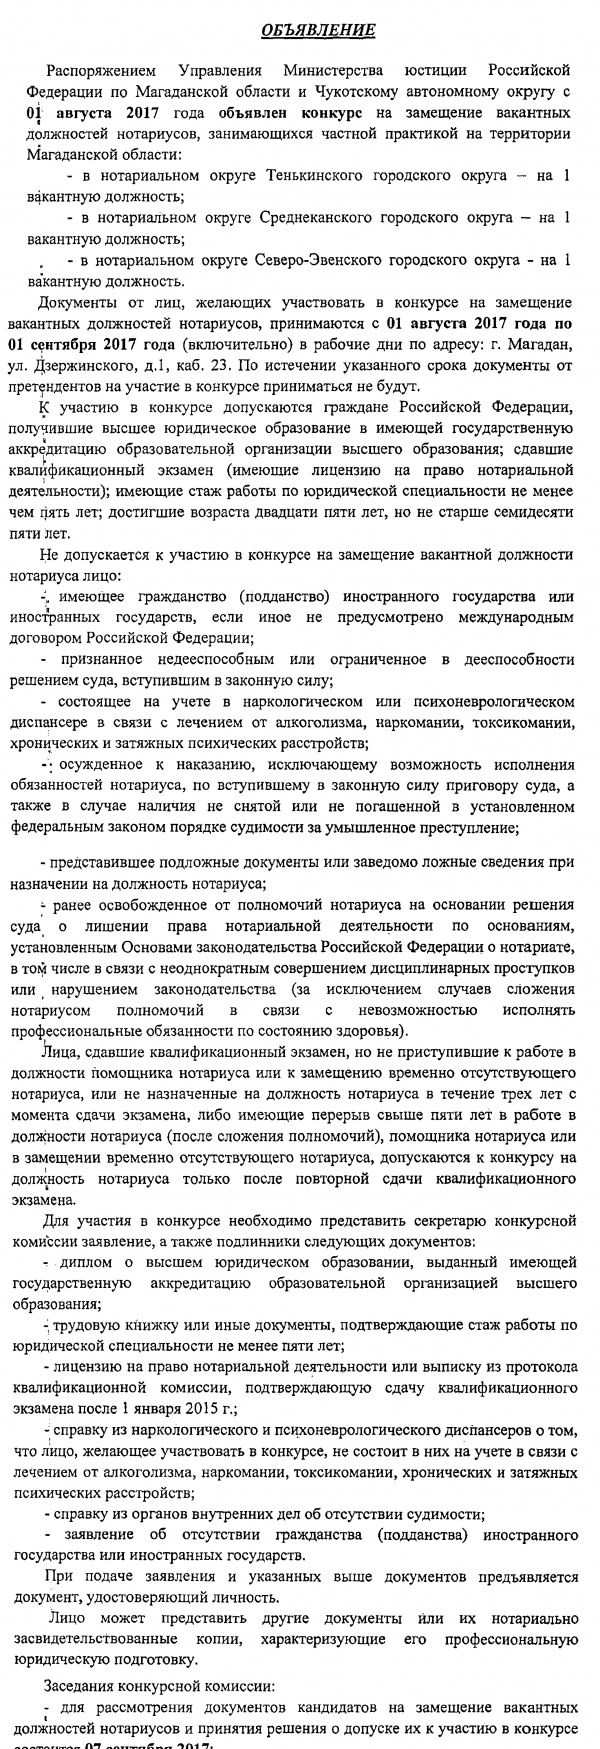 Магаданская область и Чукотский автономный округ